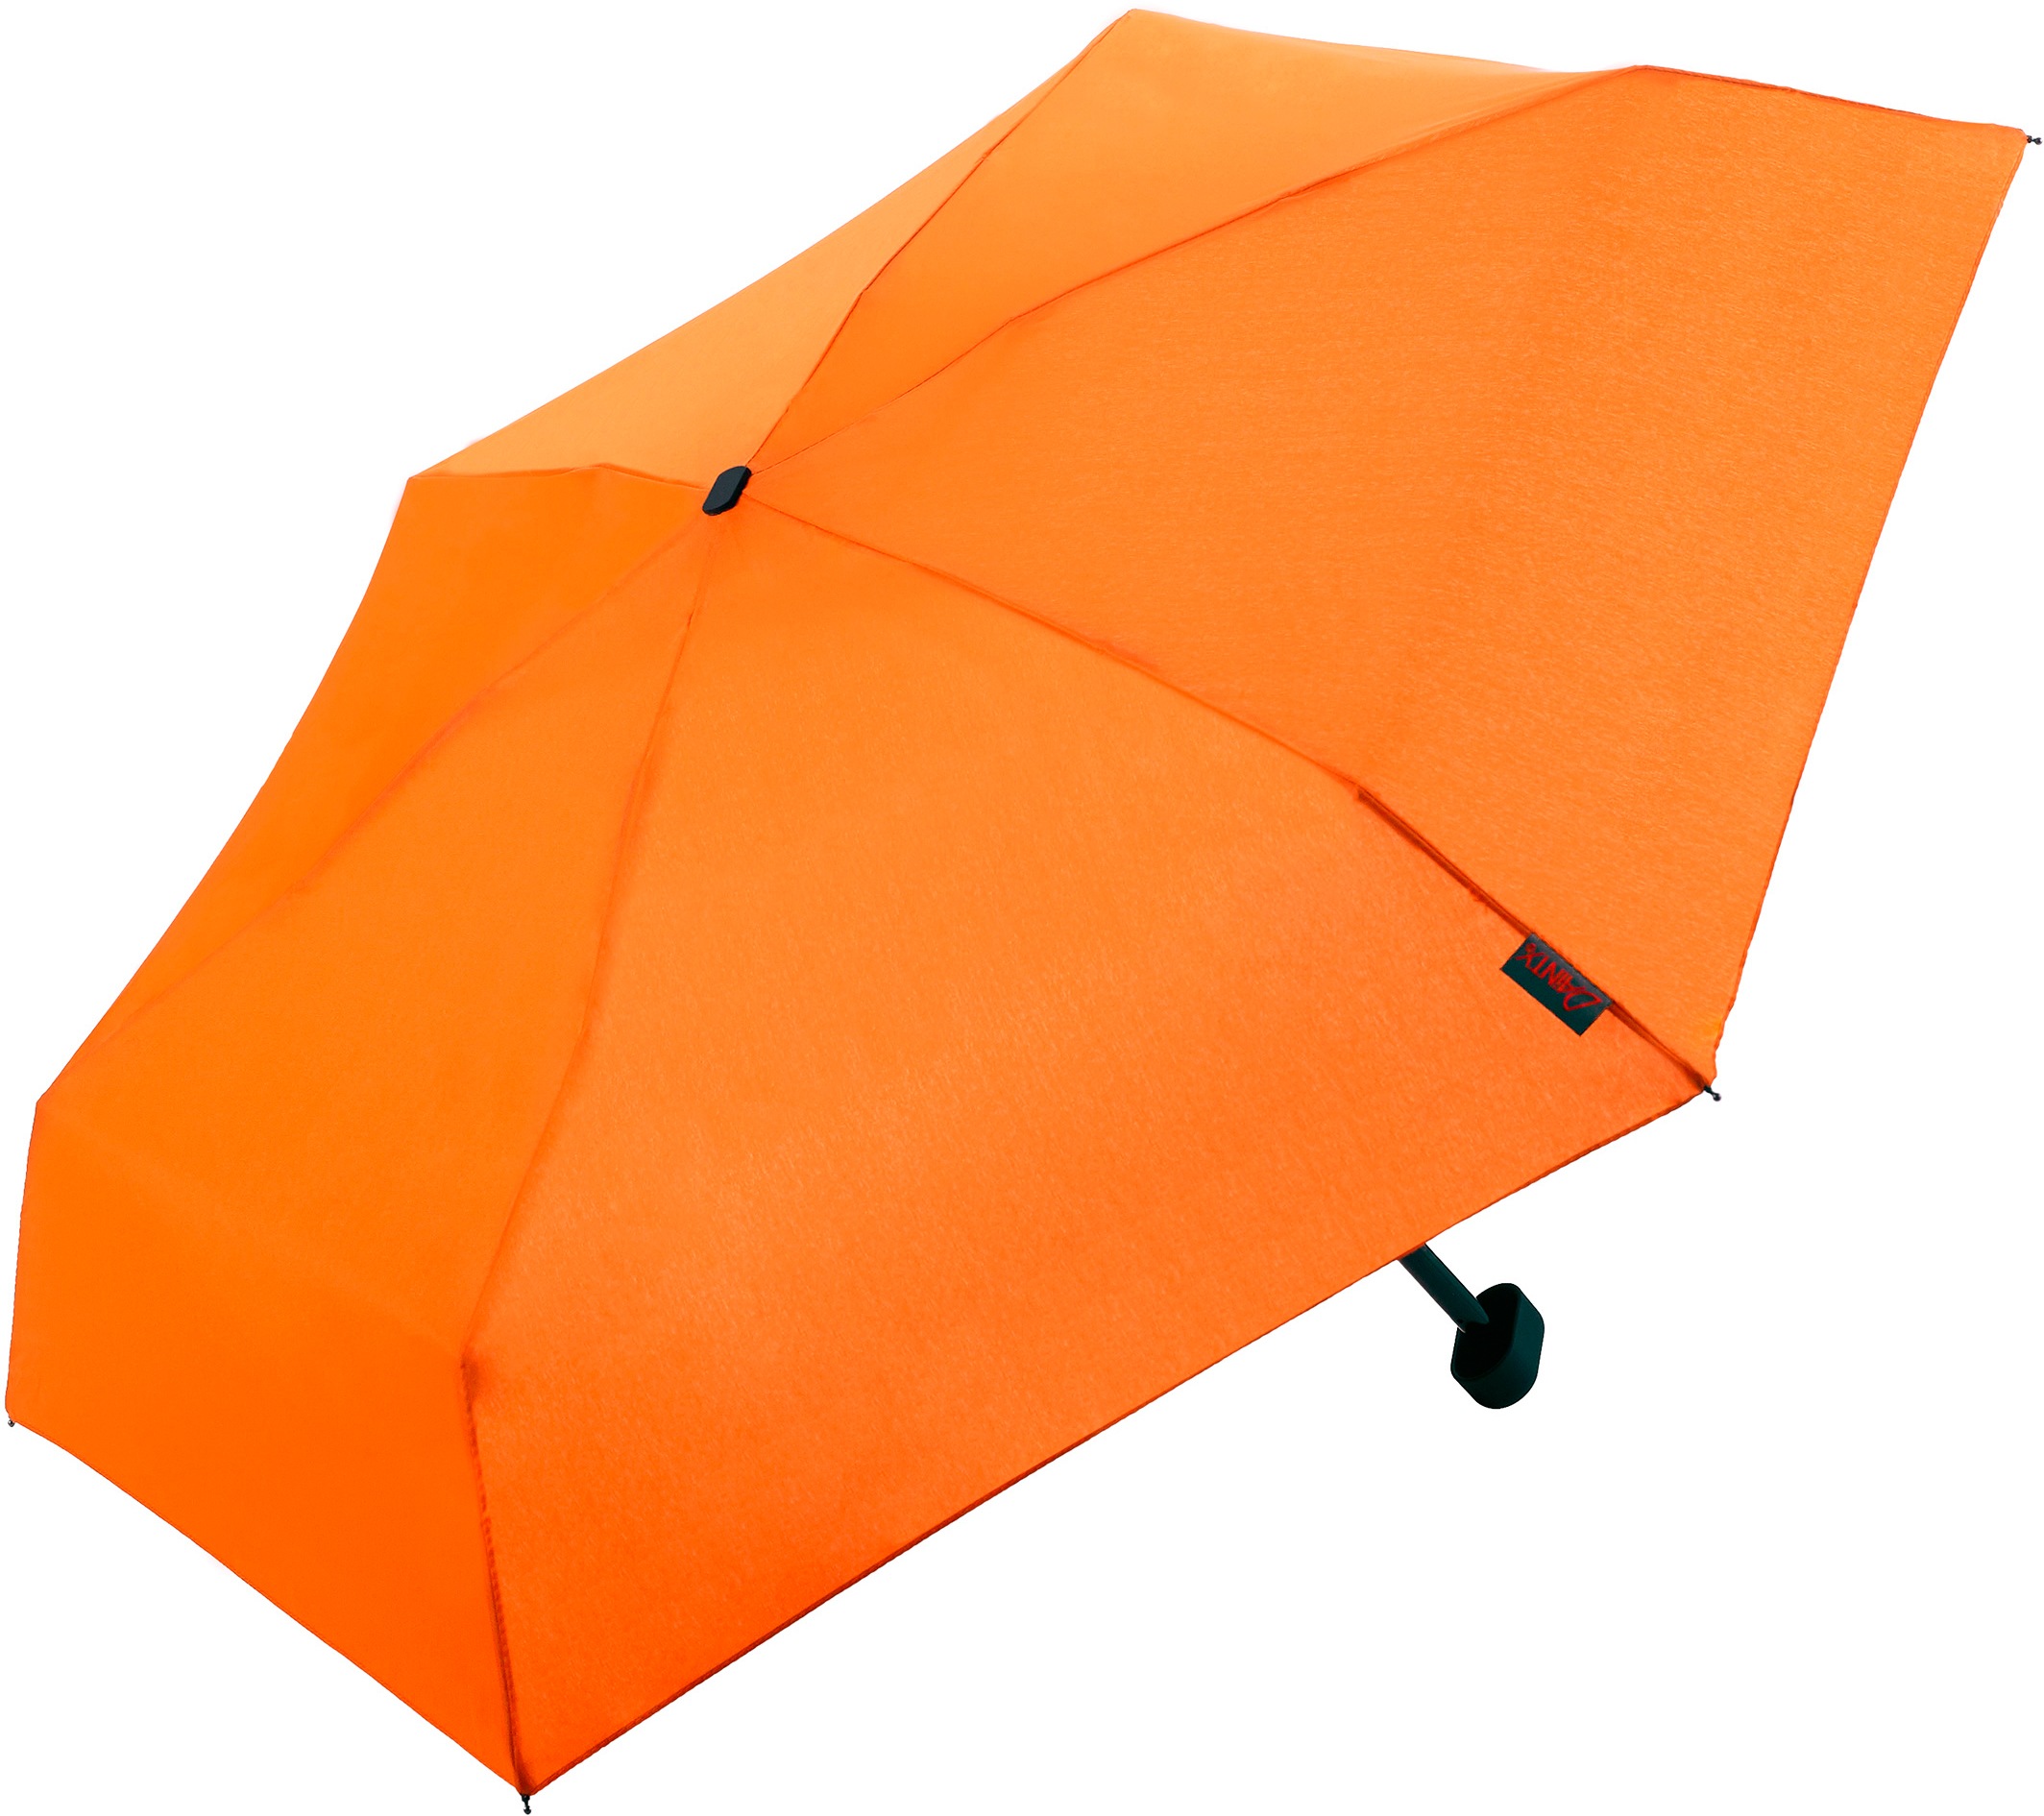 Euroschirm Dainty der Sonnen-, Wander-, Regen- & Trekkingschirm Farbe orange